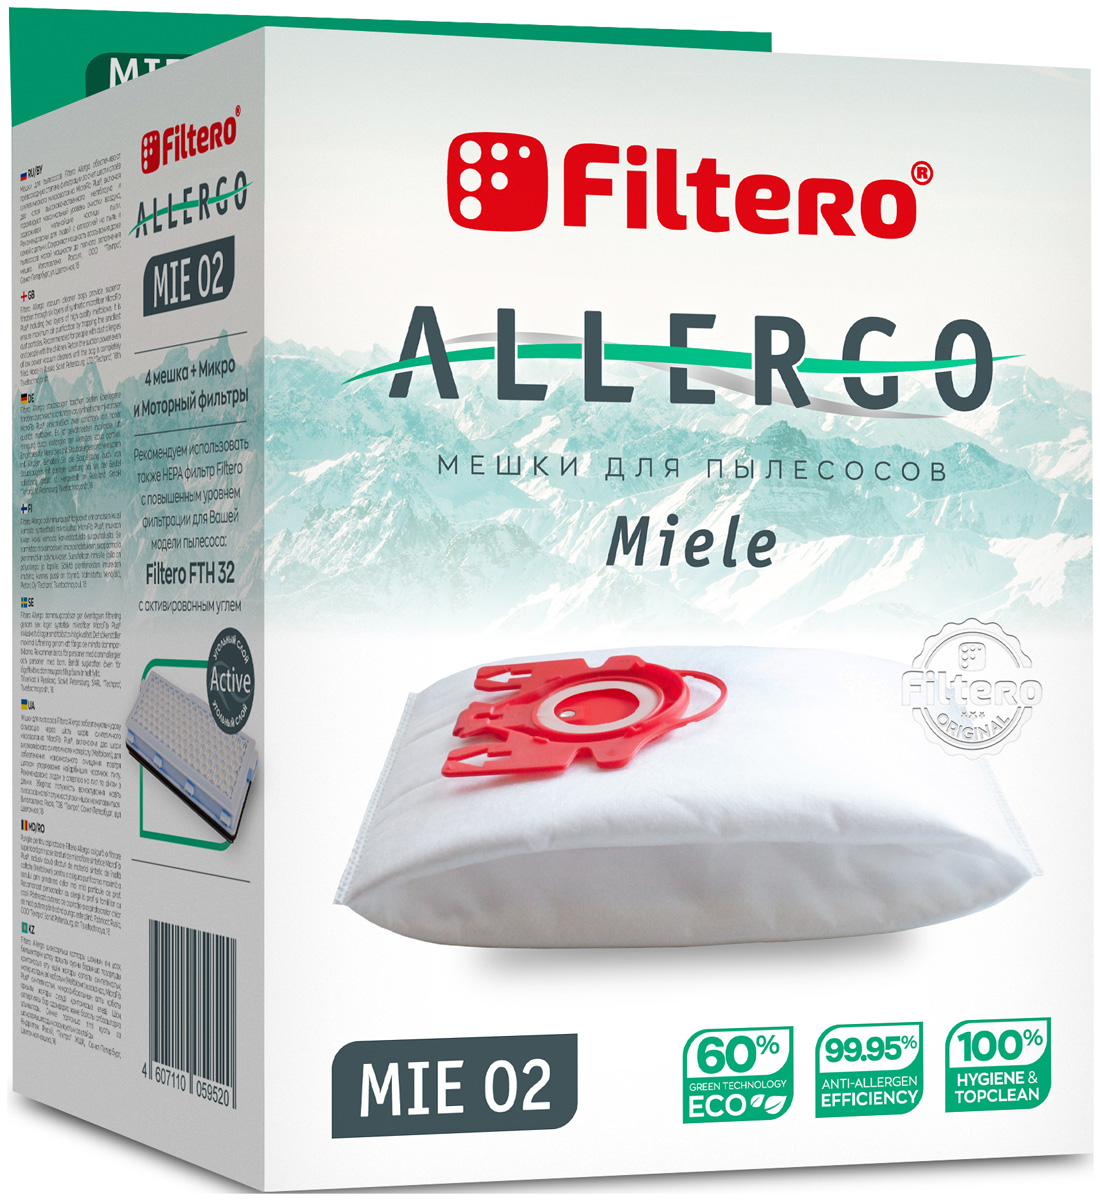 Пылесборники Filtero MIE 02 Allergo 4 шт. + моторный фильтр и микрофильтр мешки пылесборники filtero mie 02 allergo 4шт